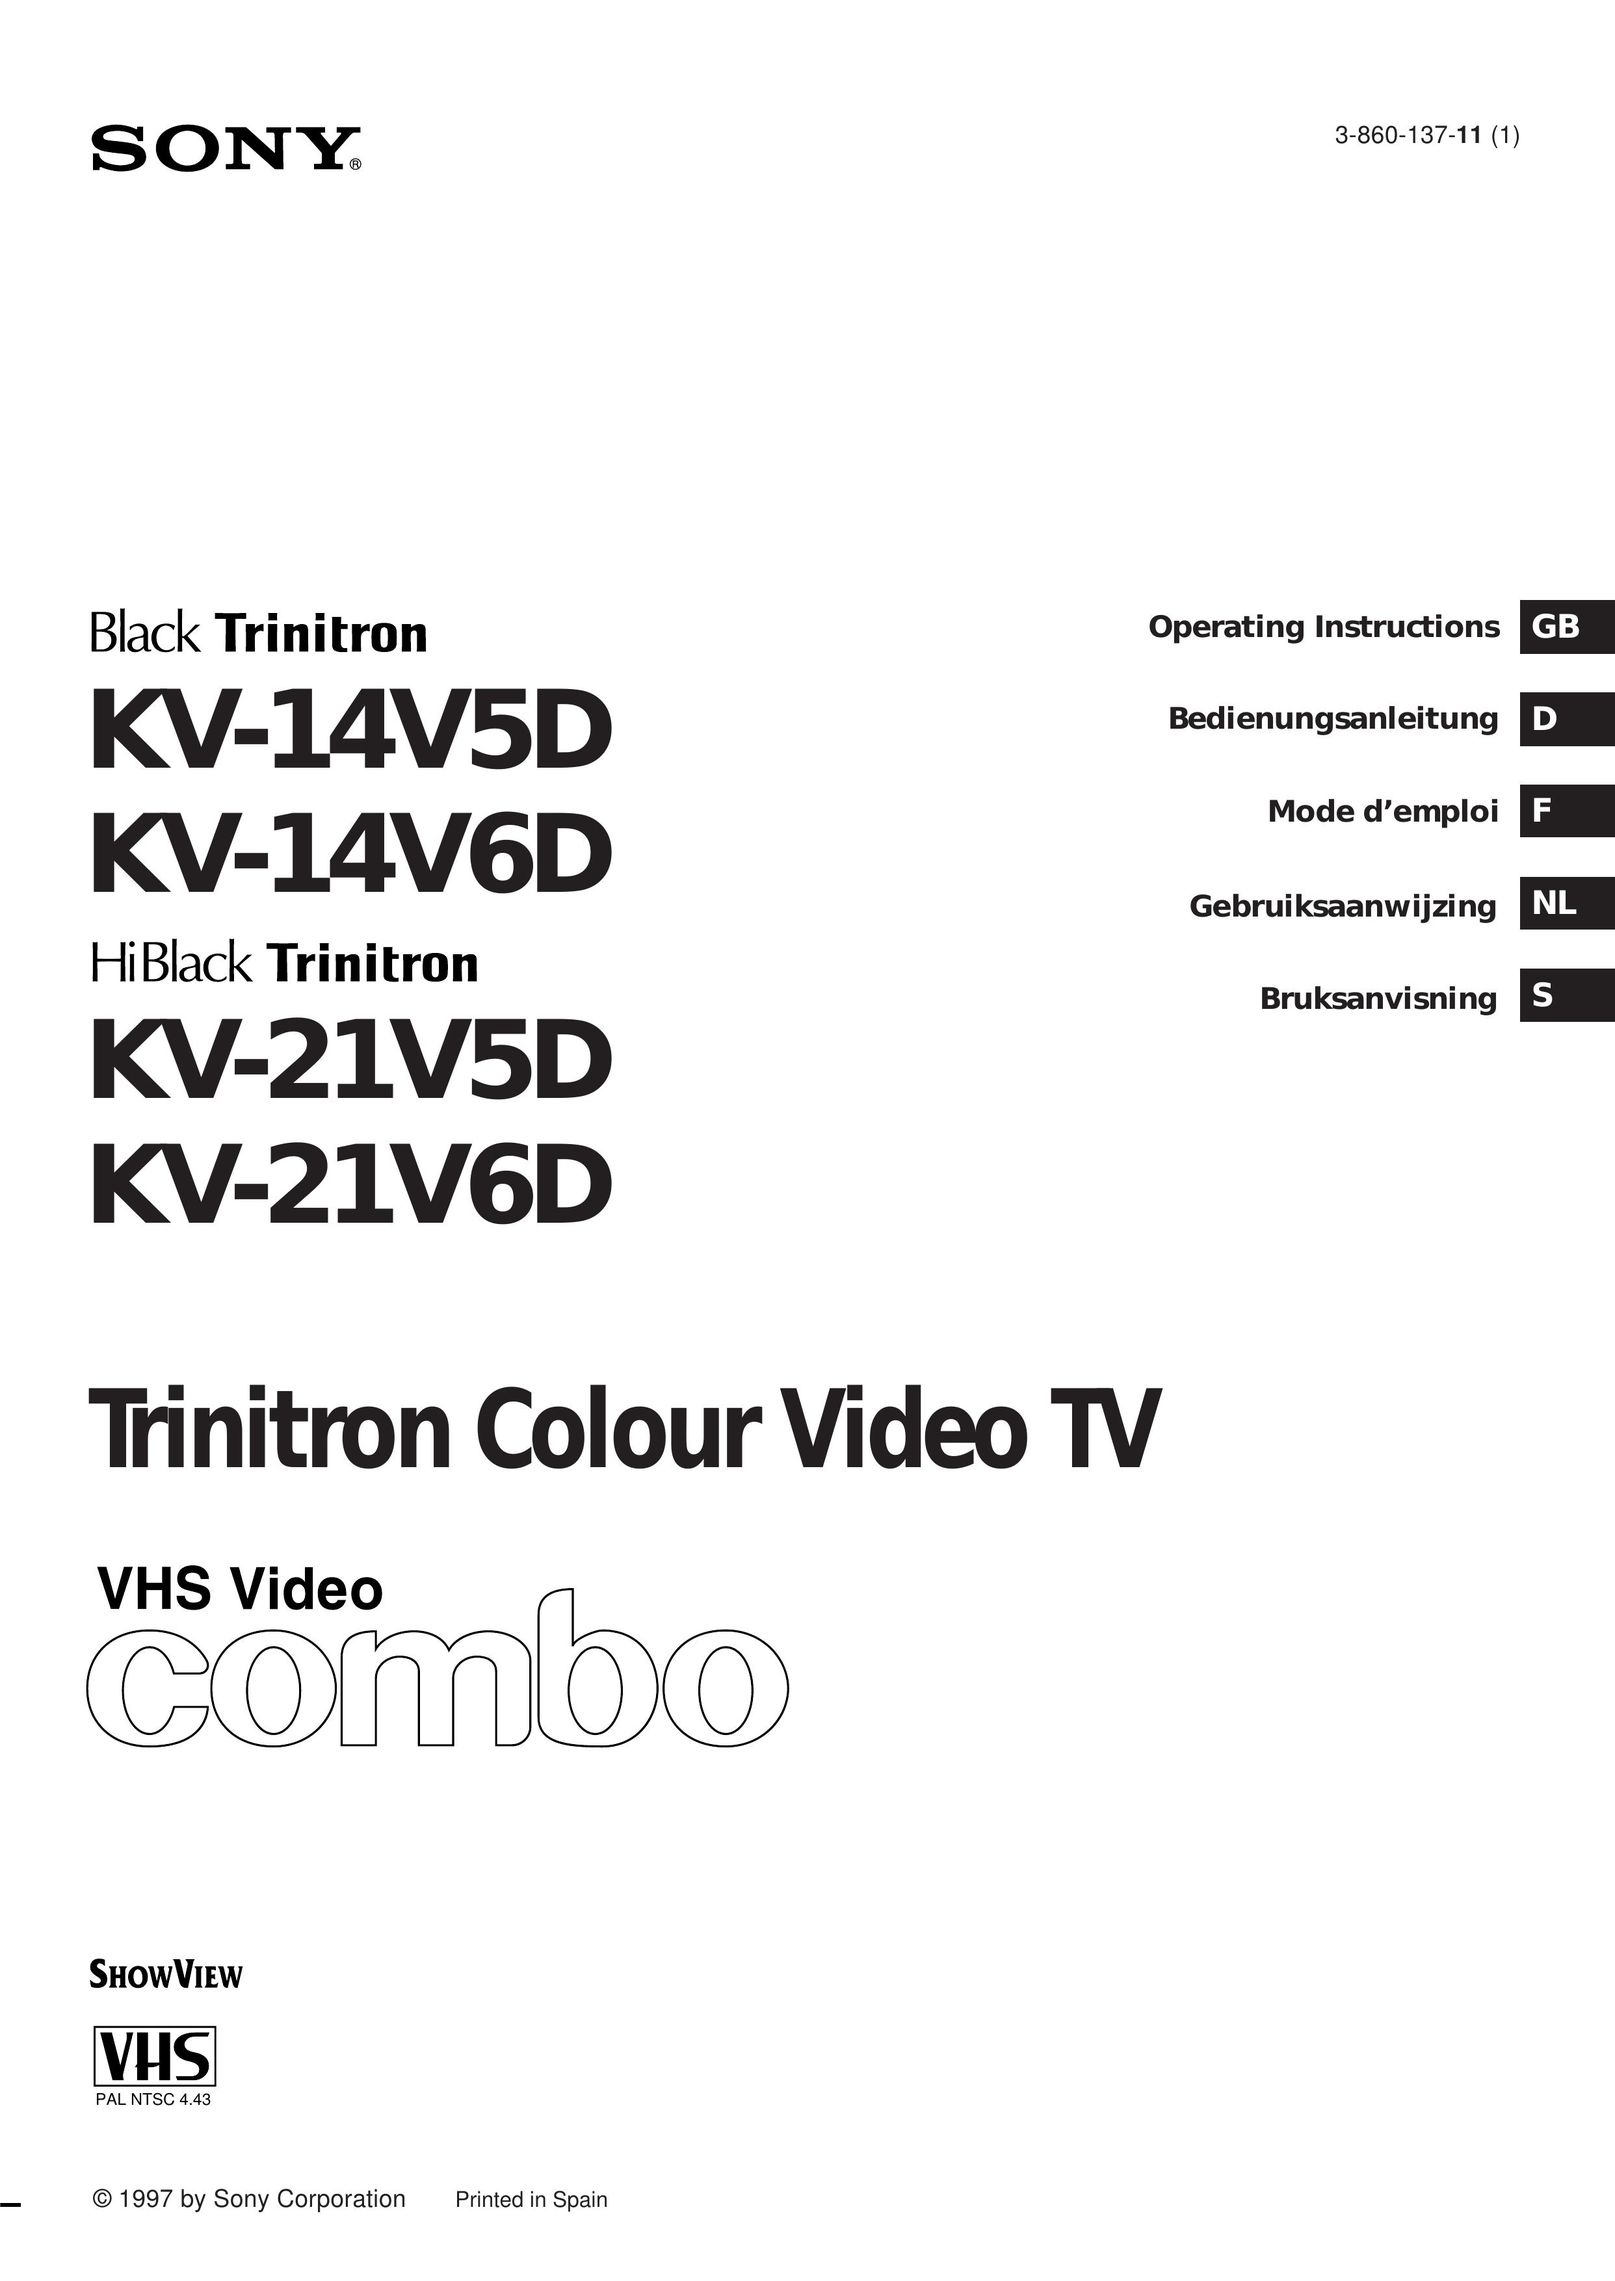 Sony KV-21V6D TV VCR Combo User Manual